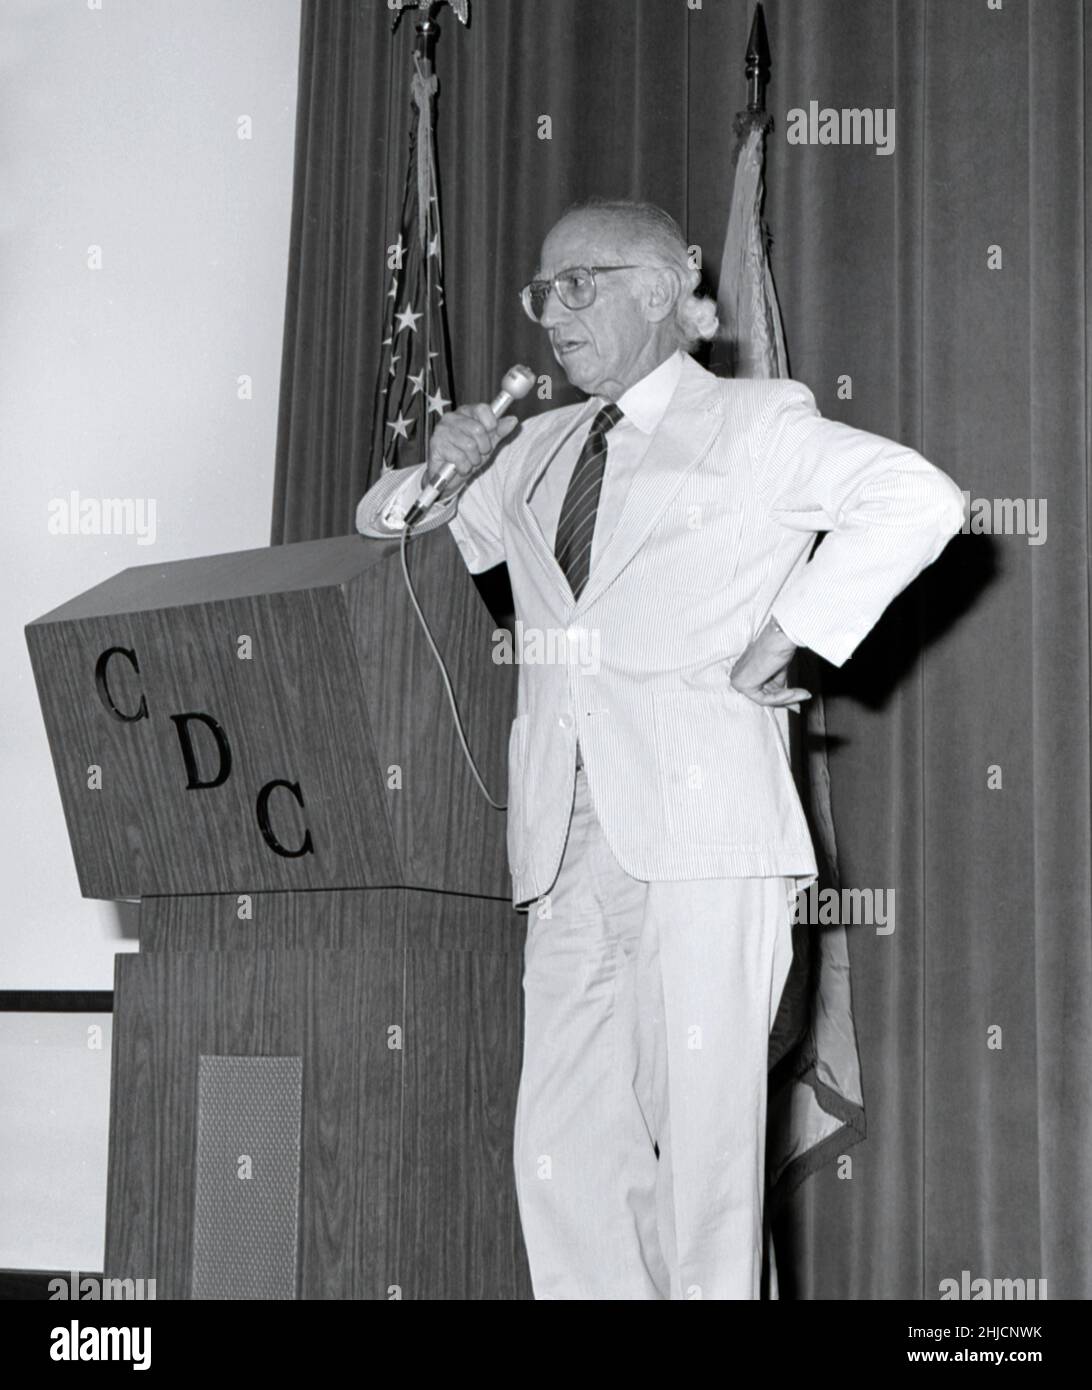 Esta fotografía muestra al Dr. Jonas Salk (izquierda), creador de la primera vacuna contra la polio en 1955, durante su presentación ante los CDC en 1988. El 12 de abril de 2005 se cumple el 50th aniversario del anuncio de que la vacuna contra la poliomielitis, desarrollada por Jonas Salk y su equipo de científicos de la Universidad de Pittsburgh, funcionó. 'Seguro, eficaz y potente' fueron las palabras utilizadas para anunciar al mundo que se había encontrado una vacuna eficaz contra una enfermedad que una vez paralizó a 13.000--20.000 personas cada año en los Estados Unidos. 1988 / xxxxxx Almacenamiento de imágenes: Xxxxxxxxxxxxx CD 112 DH/ 041 http://www.cdc. Foto de stock